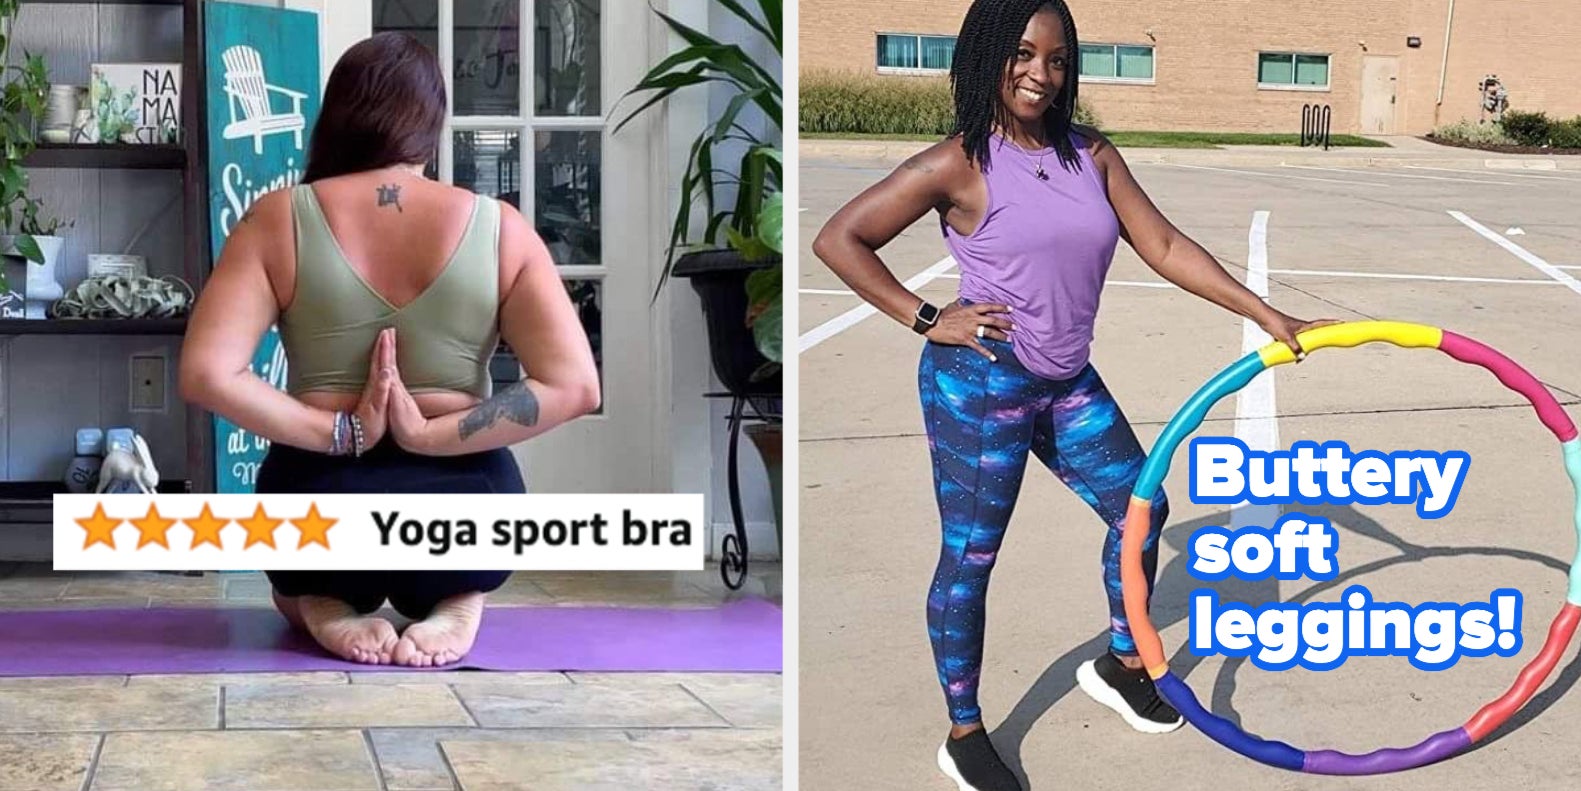 Beyond Yoga X Peloton Space Dye Leggings/Crop Top Set Small - Athletic  apparel